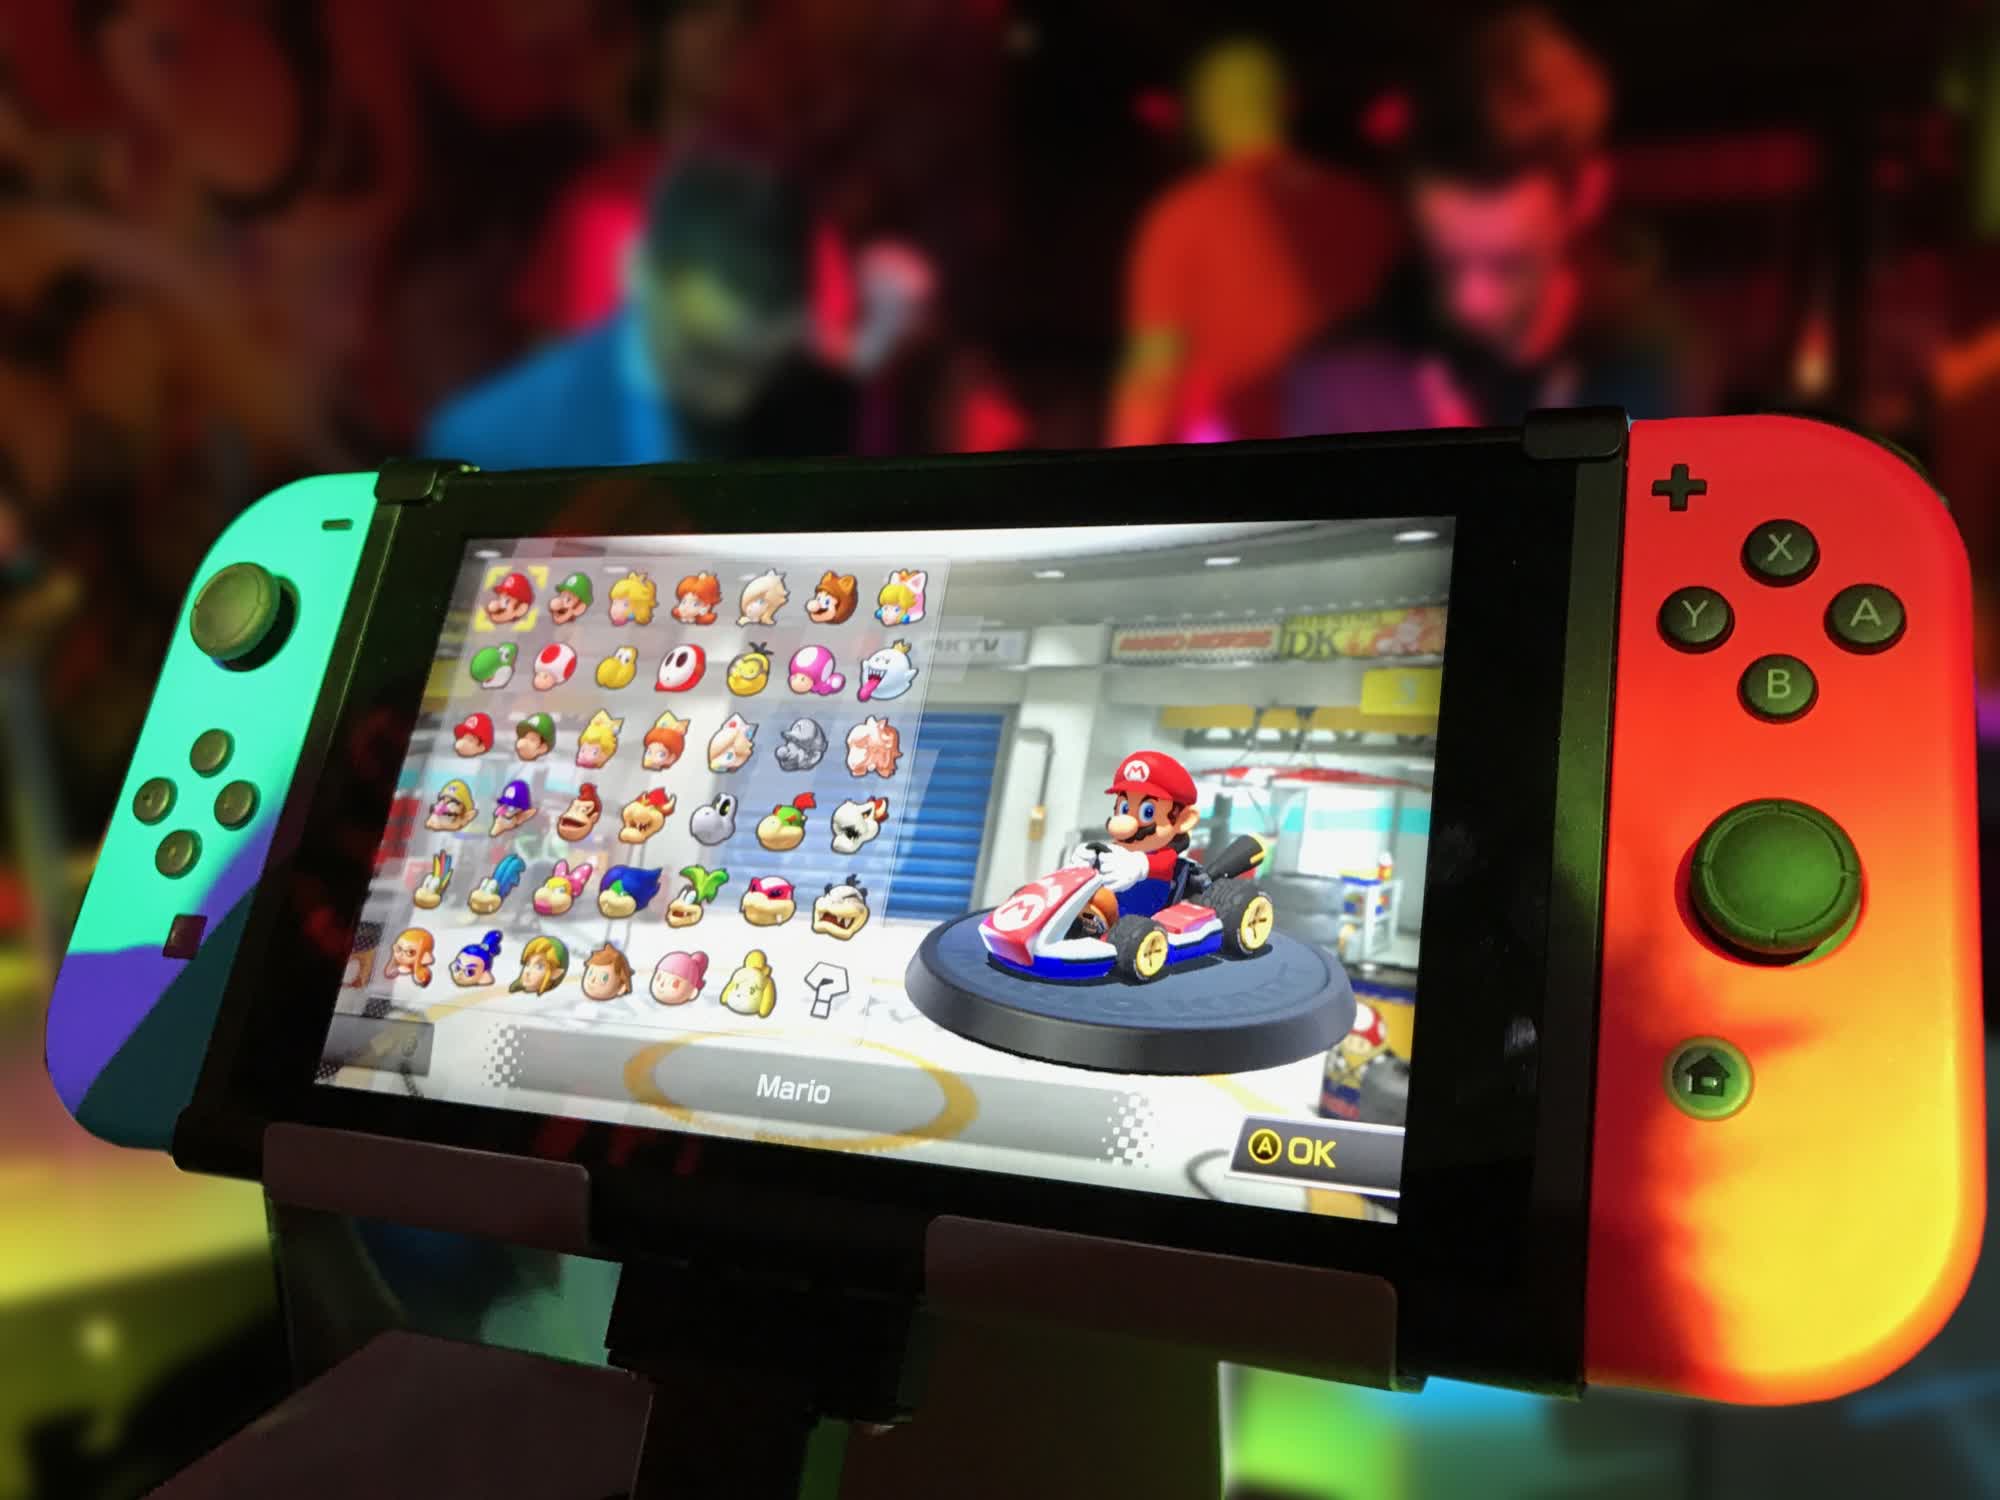 Un analista dice que Nintendo Switch 2 se lanzará este año y contará con una pantalla LCD de 8 pulgadas